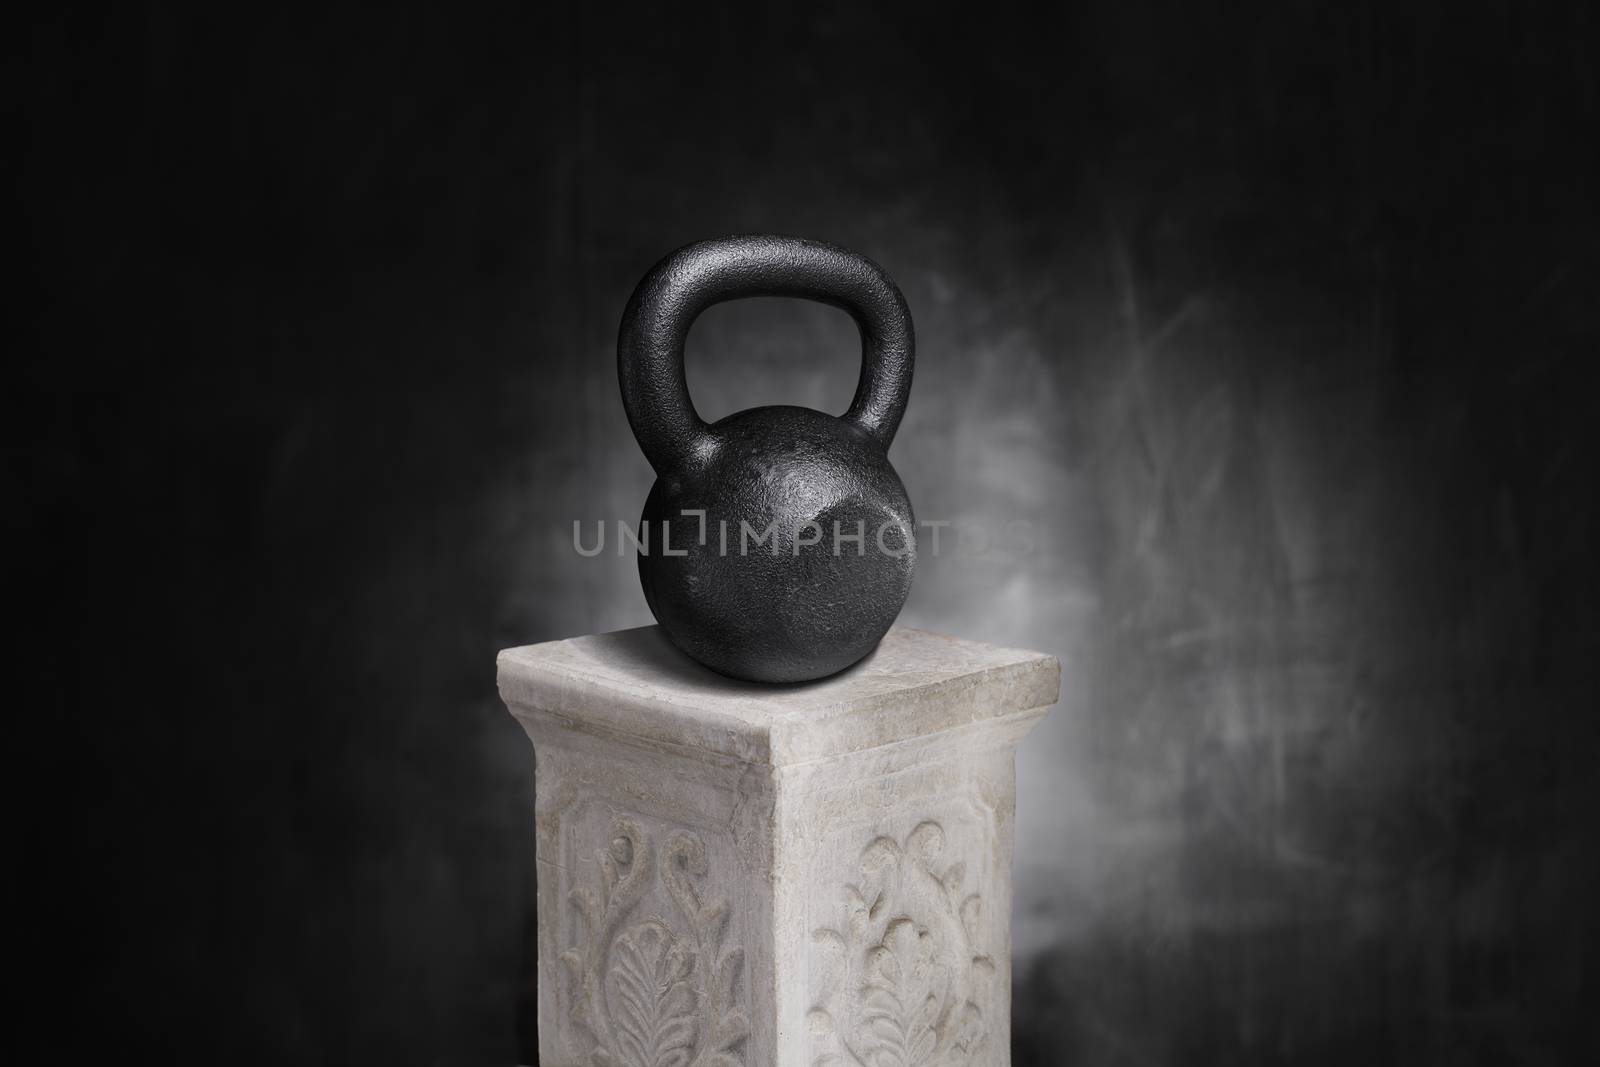 Cast iron kettlebell on a pedestal.